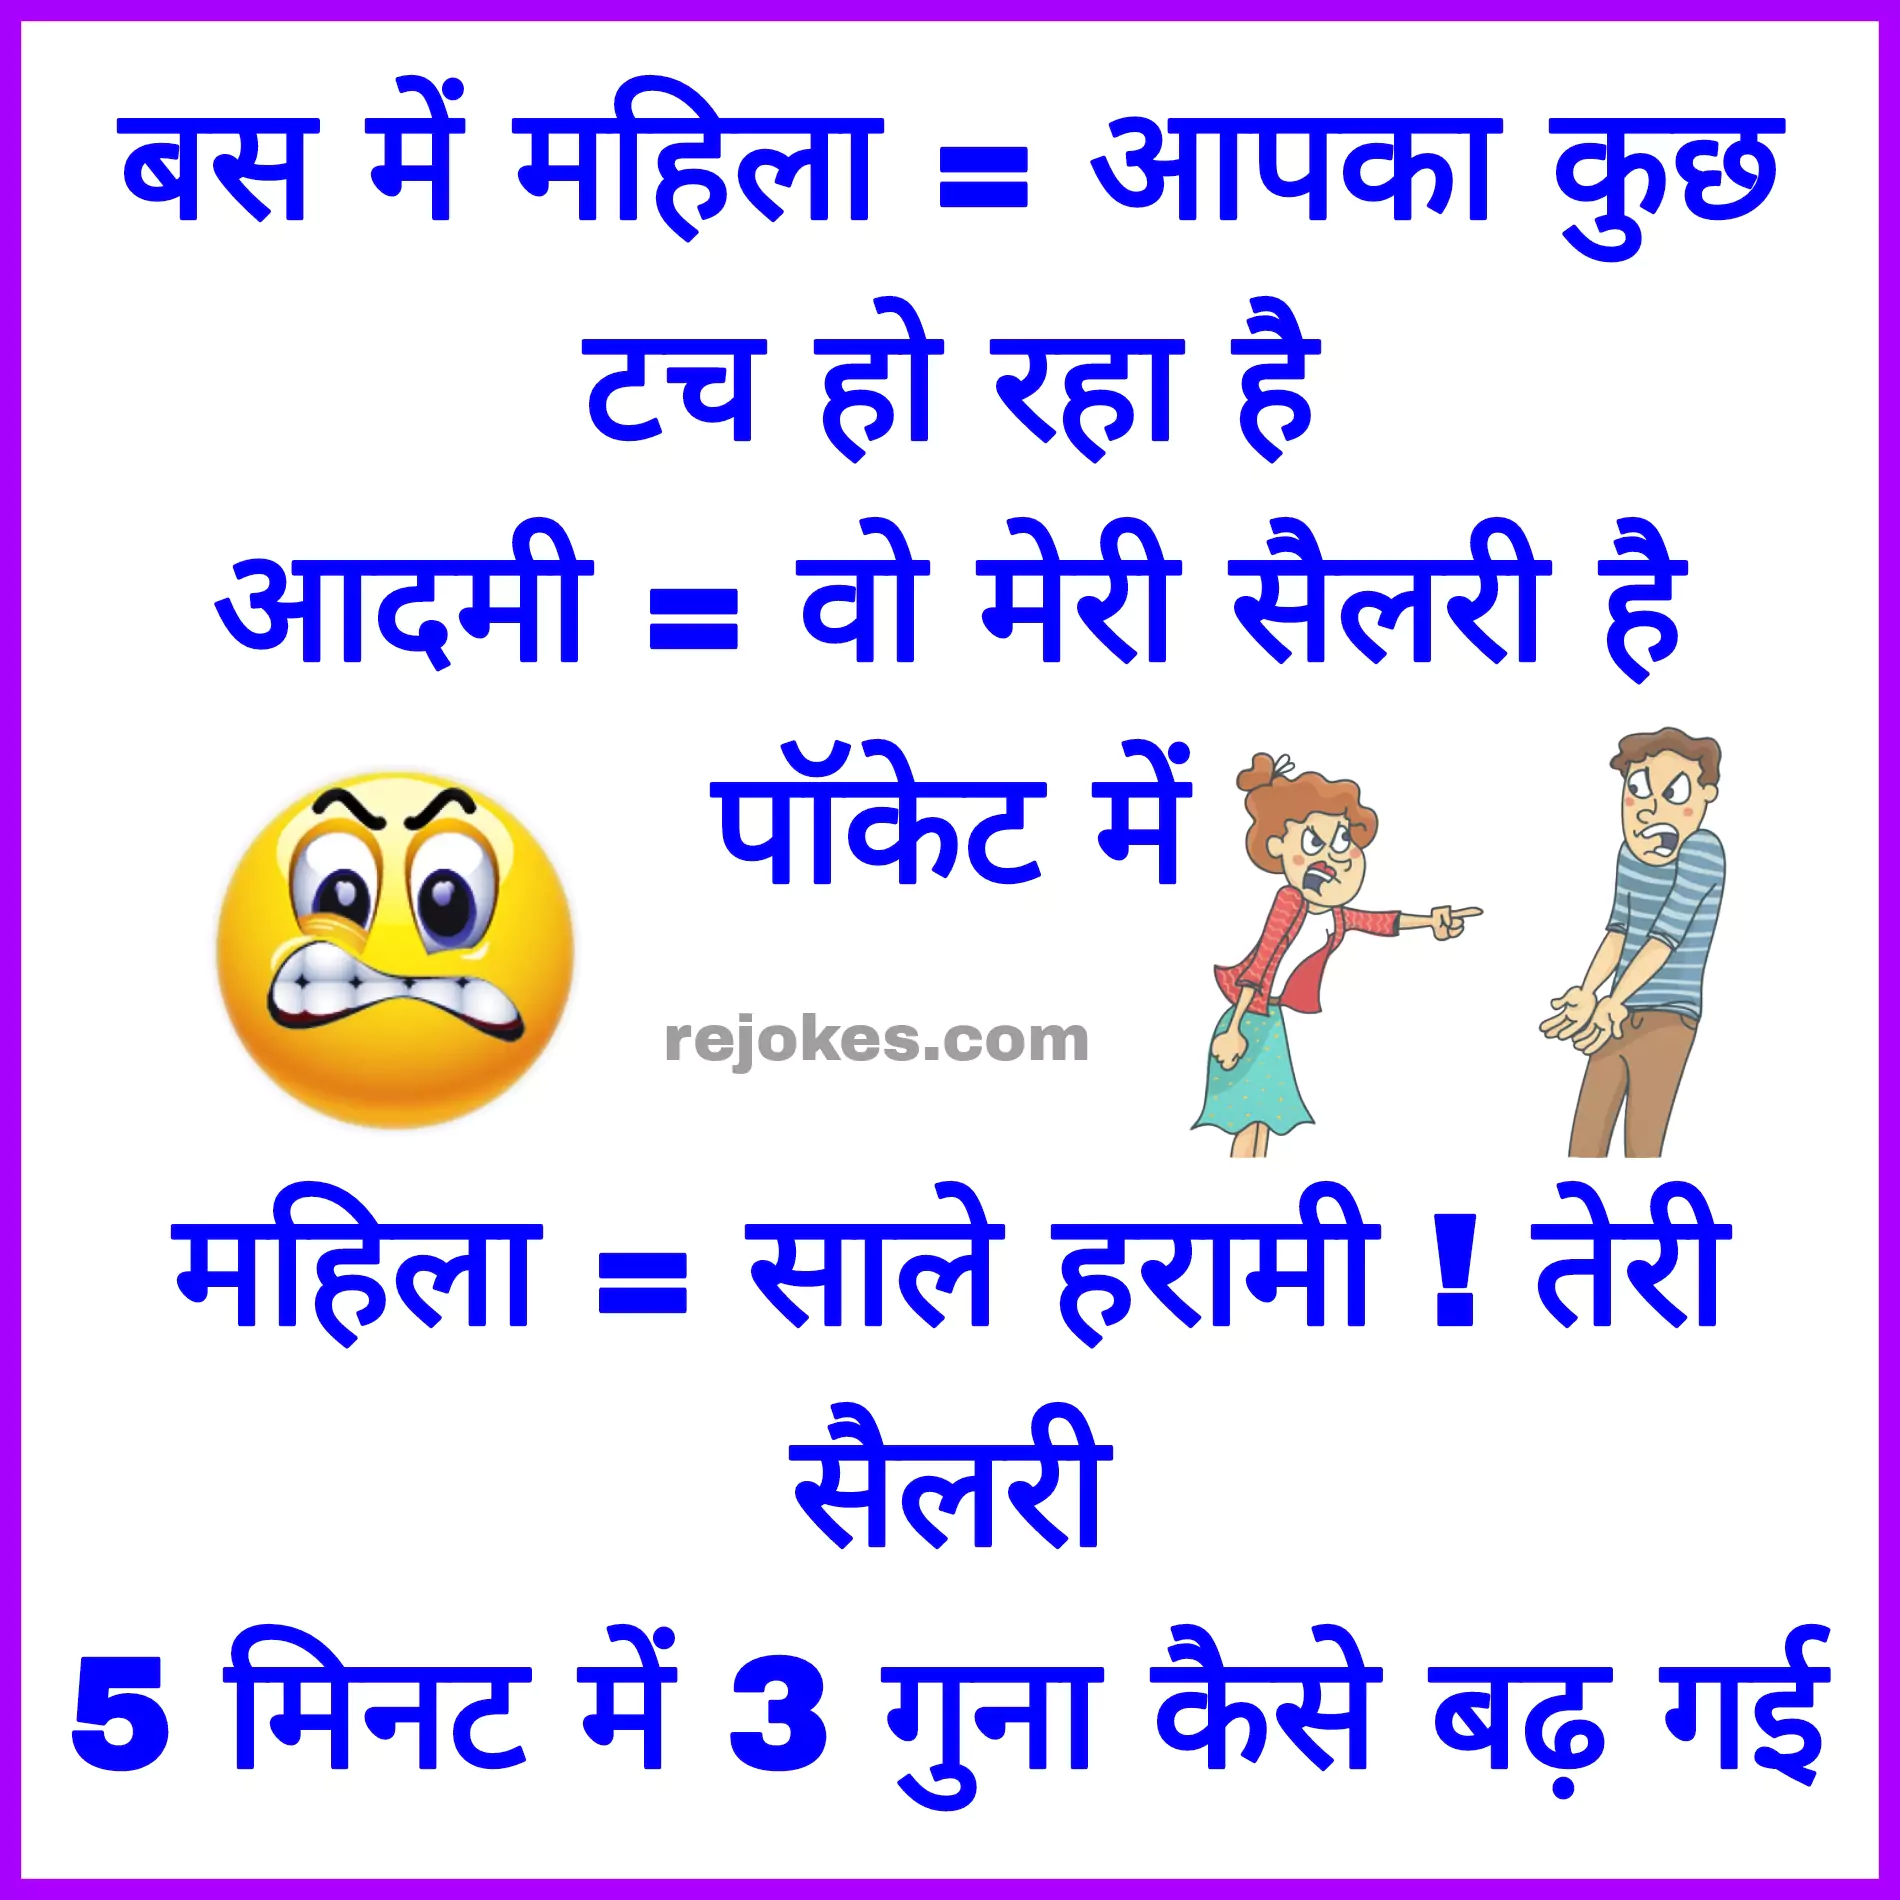 gande jokes chutcule in hindi images